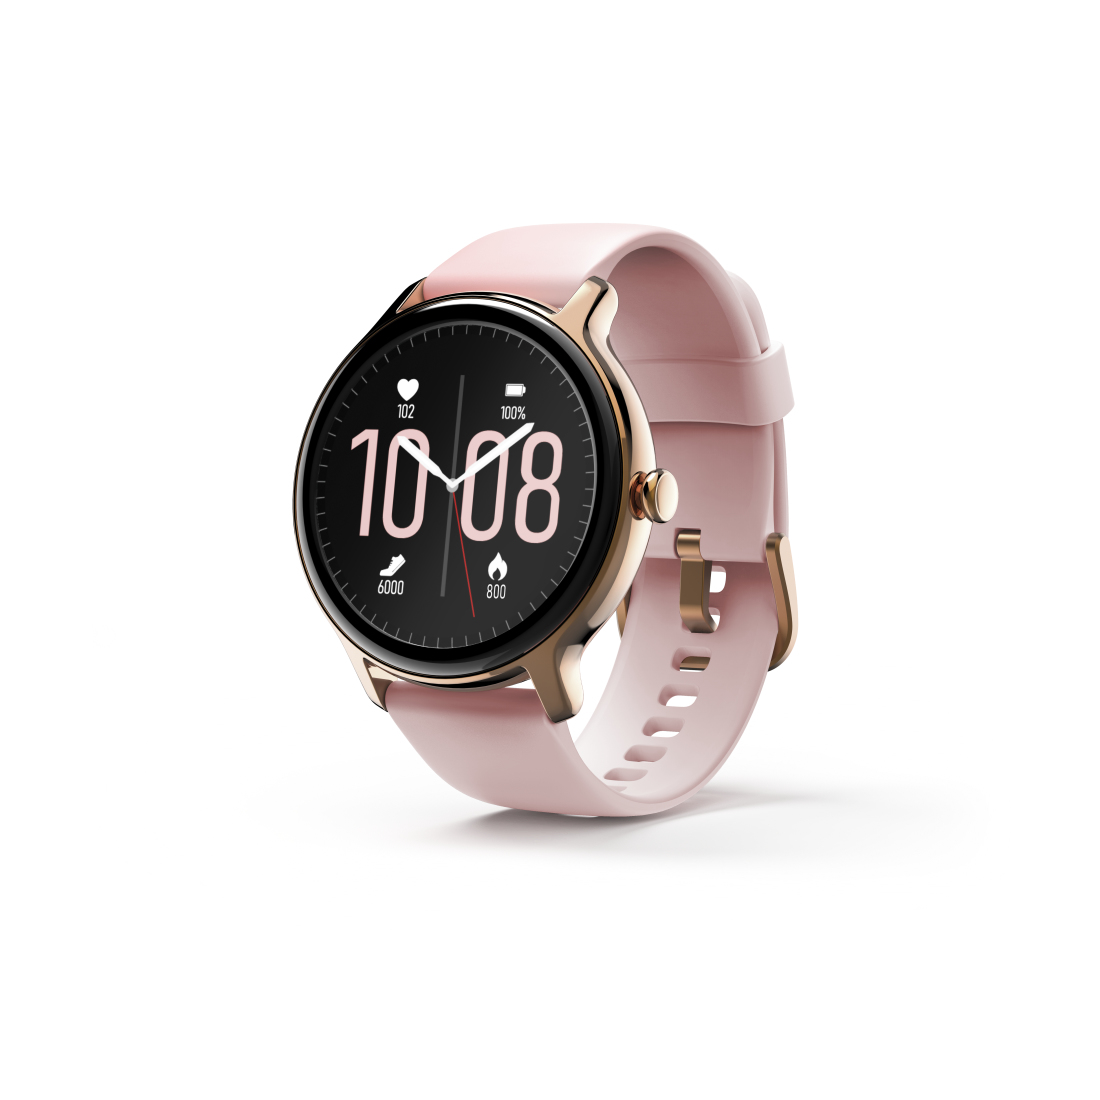 Hama Smartwatch Fit Watch 4910, waterdicht, hartslag, zuurstofgeh. bloed, rosé